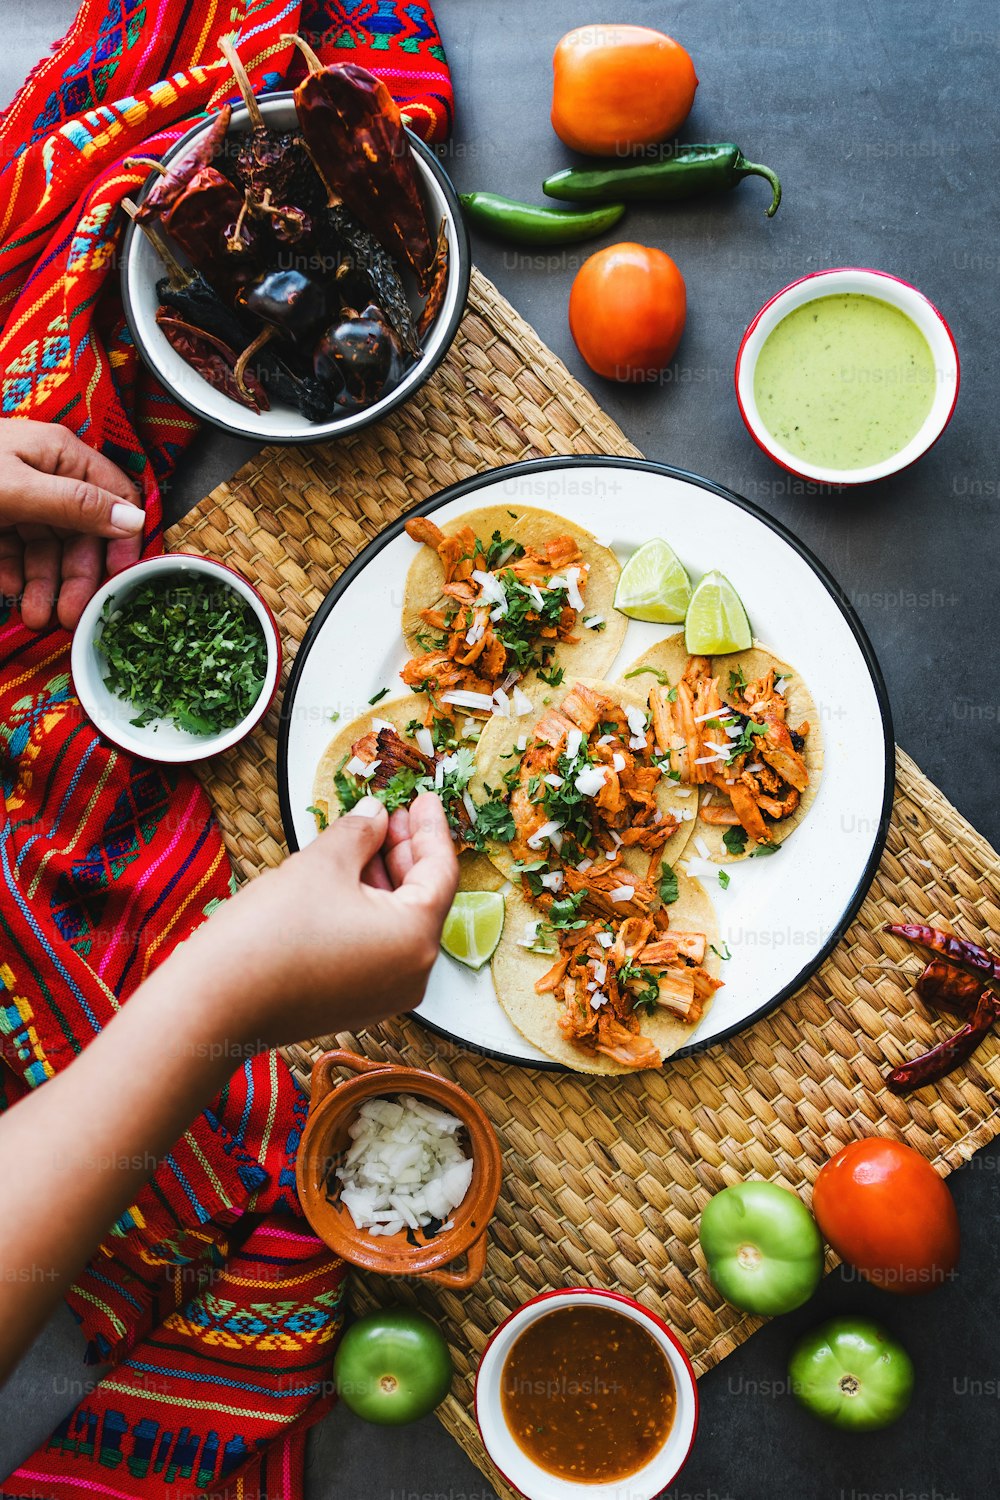 Manos de mujer latina preparando tacos mexicanos con carnitas de cerdo, aguacate, cebolla, cilantro y salsa roja en México